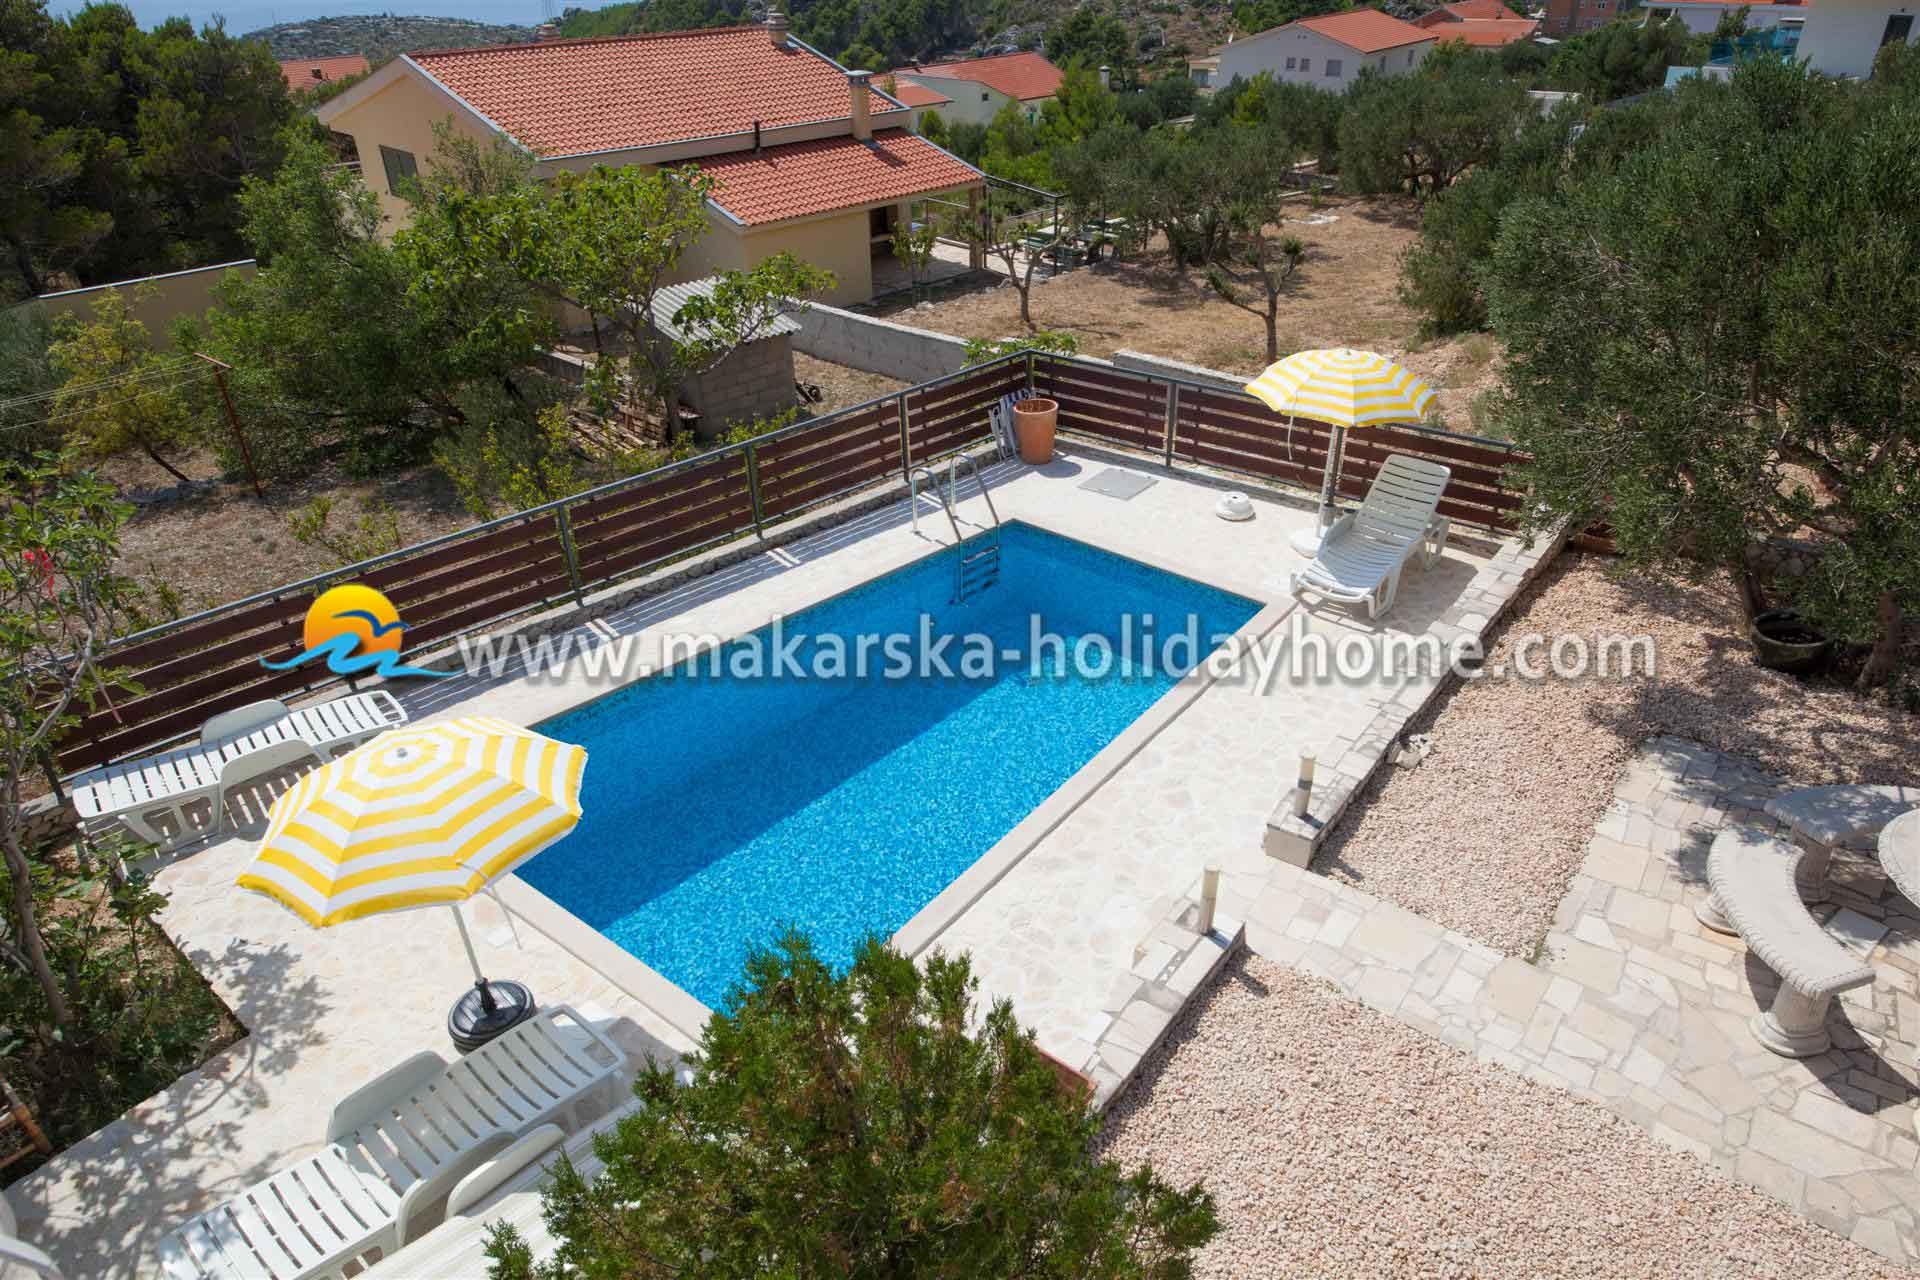 Holiday villa with Pool in Makarska - Willa Leon / 10